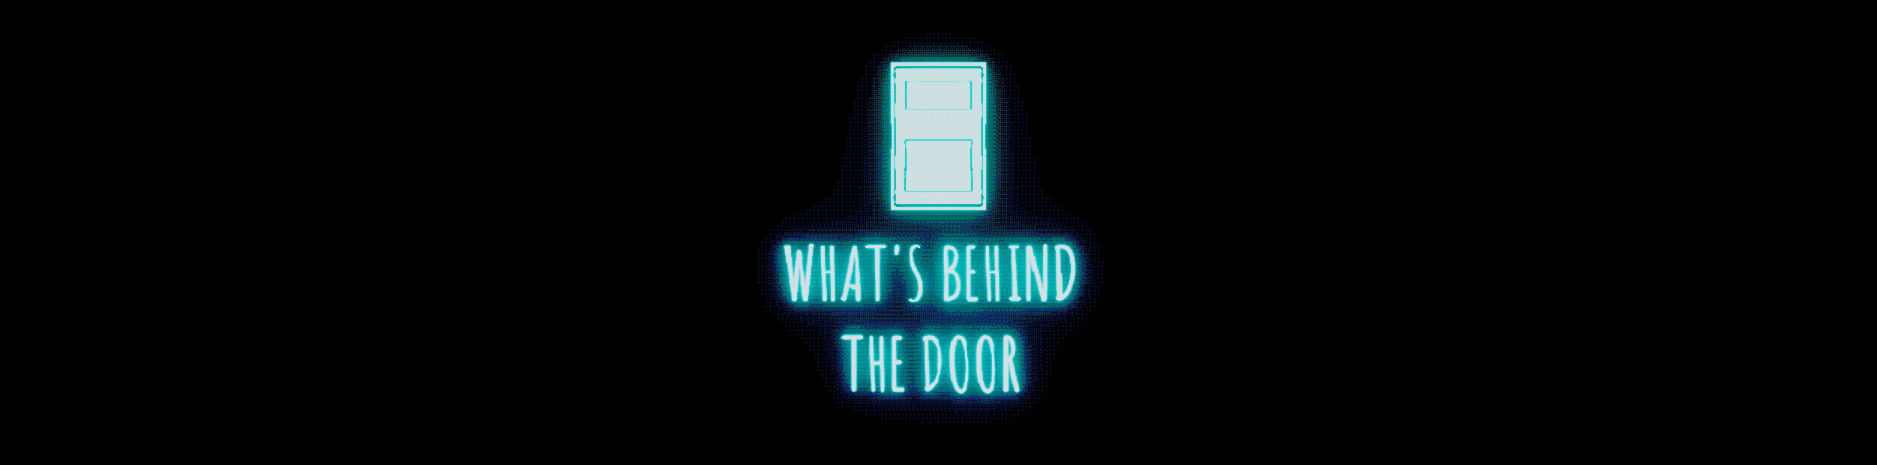 WHAT'S BEHIND THE DOOR